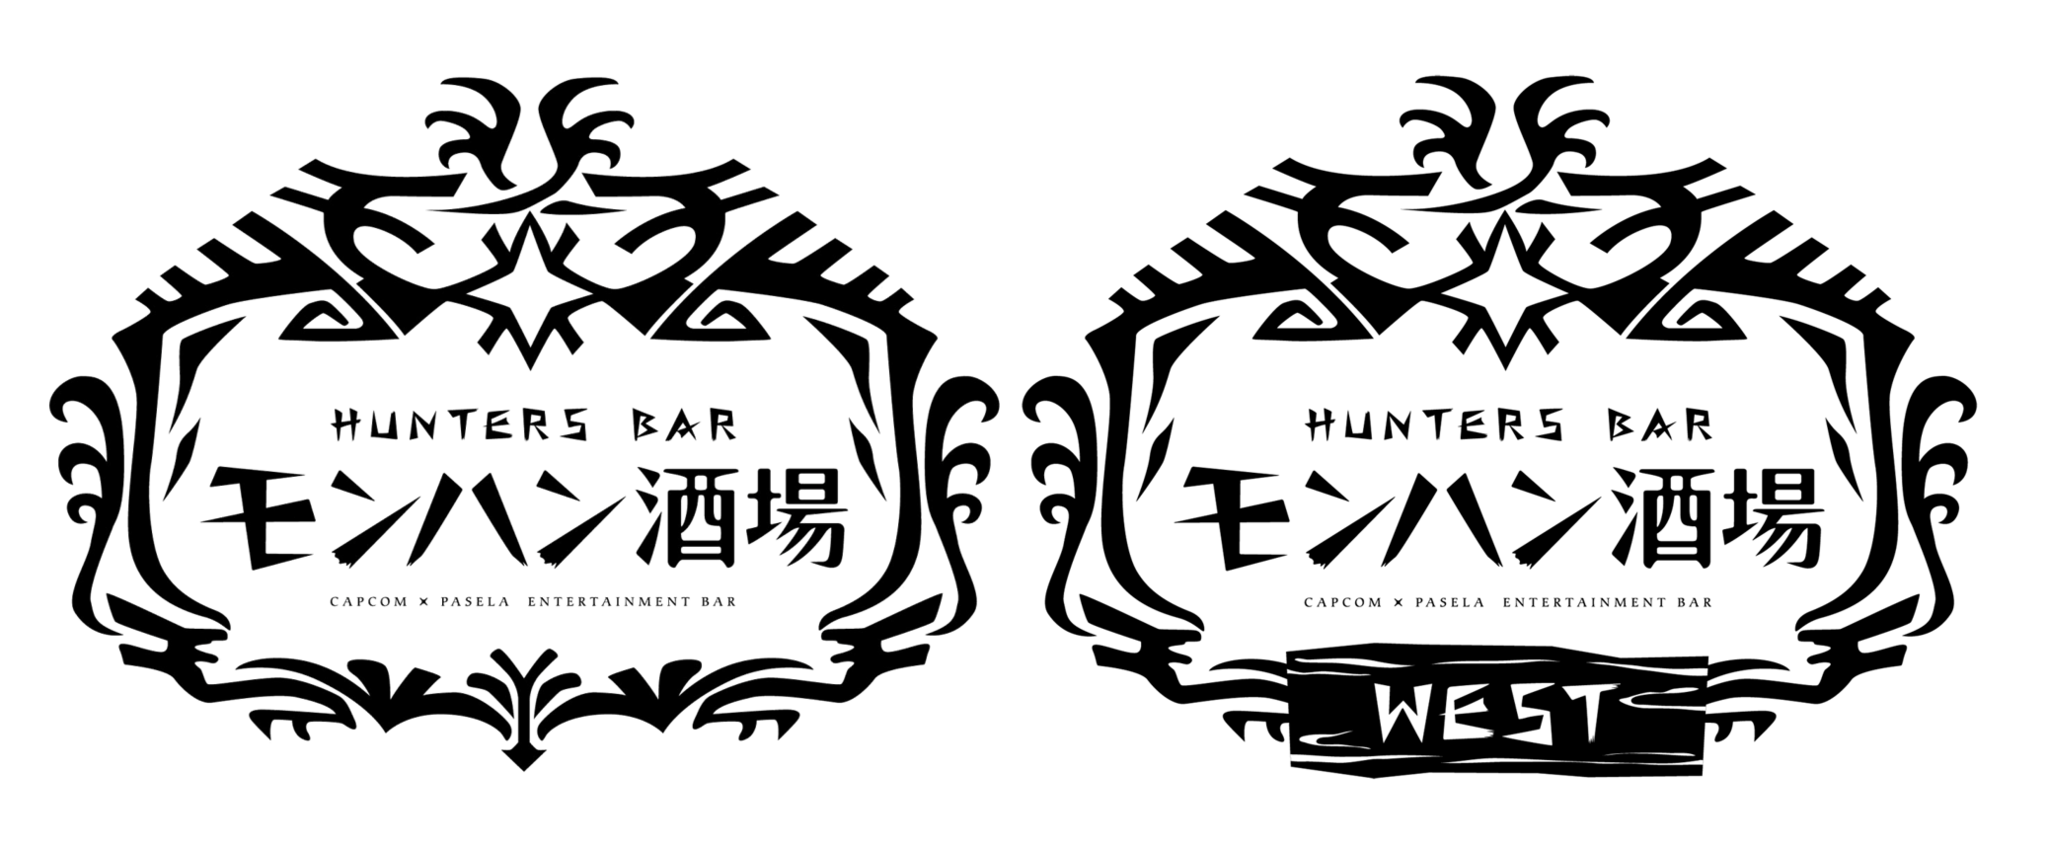 モンハン酒場 モンハン酒場 West において モンスターハンターワールド アイスボーン コラボ決定 株式会社カプコンのプレスリリース